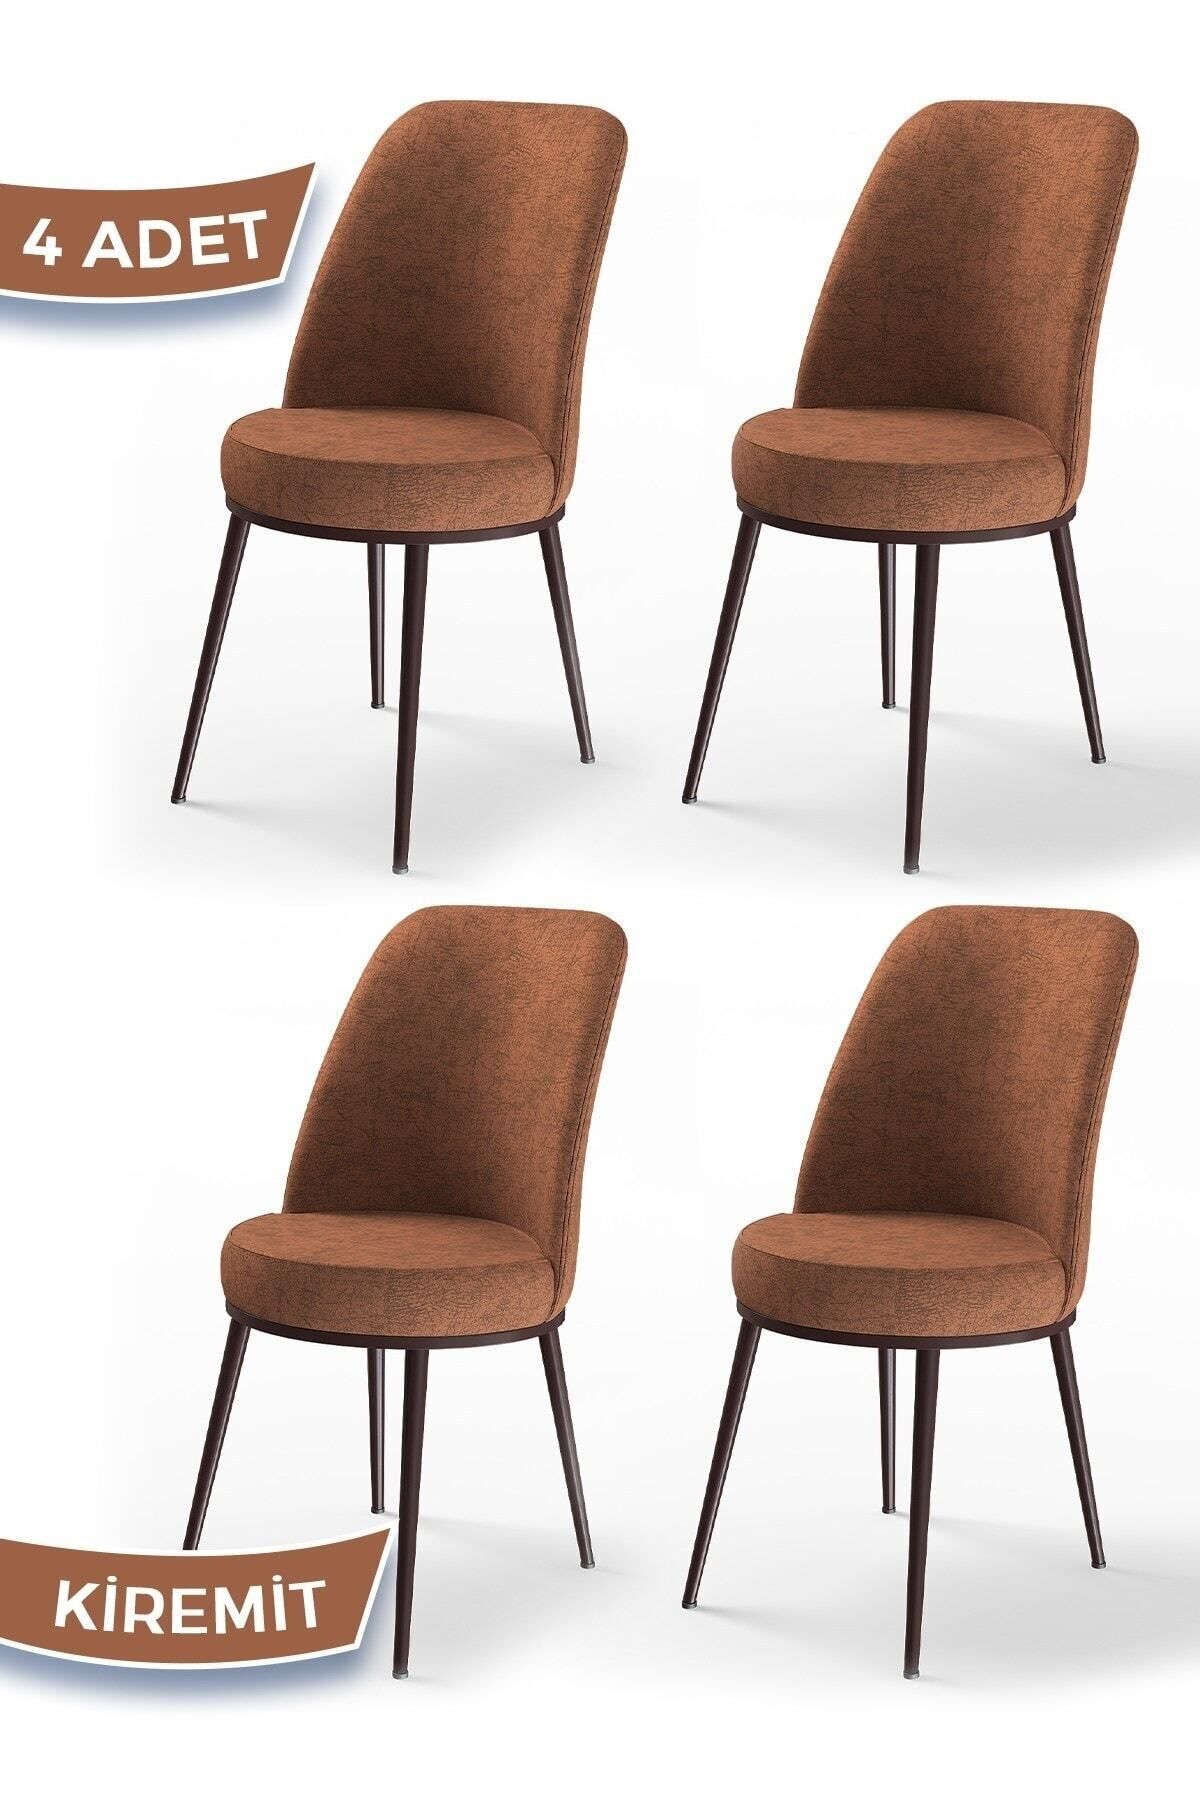 Canisa Concept Dexa Serisi, Üst Kalite Yemek Odası Sandalyesi, Metal Kahverengi Iskeletli, 4 Adet Kiremit Sandalye